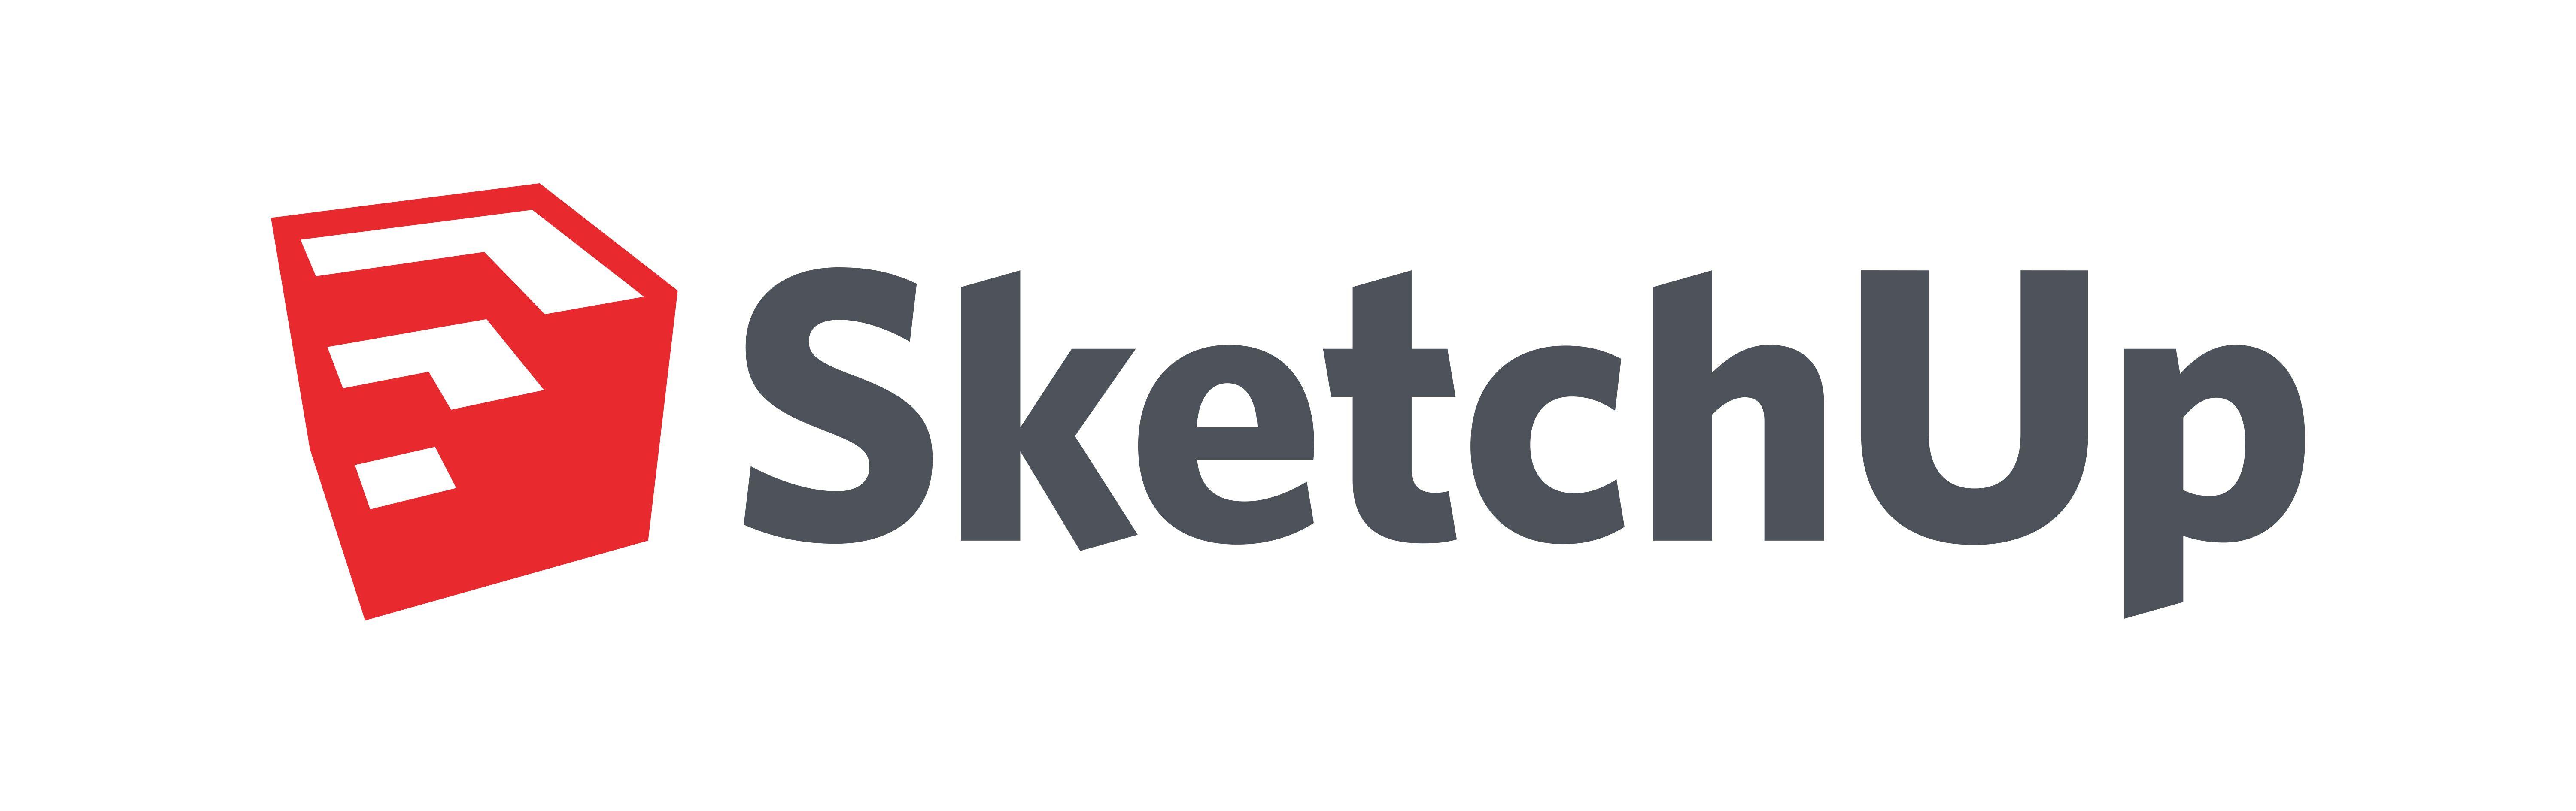 SketchUp Logo - sketchup-logo - Valdez Museum & Historical Archive